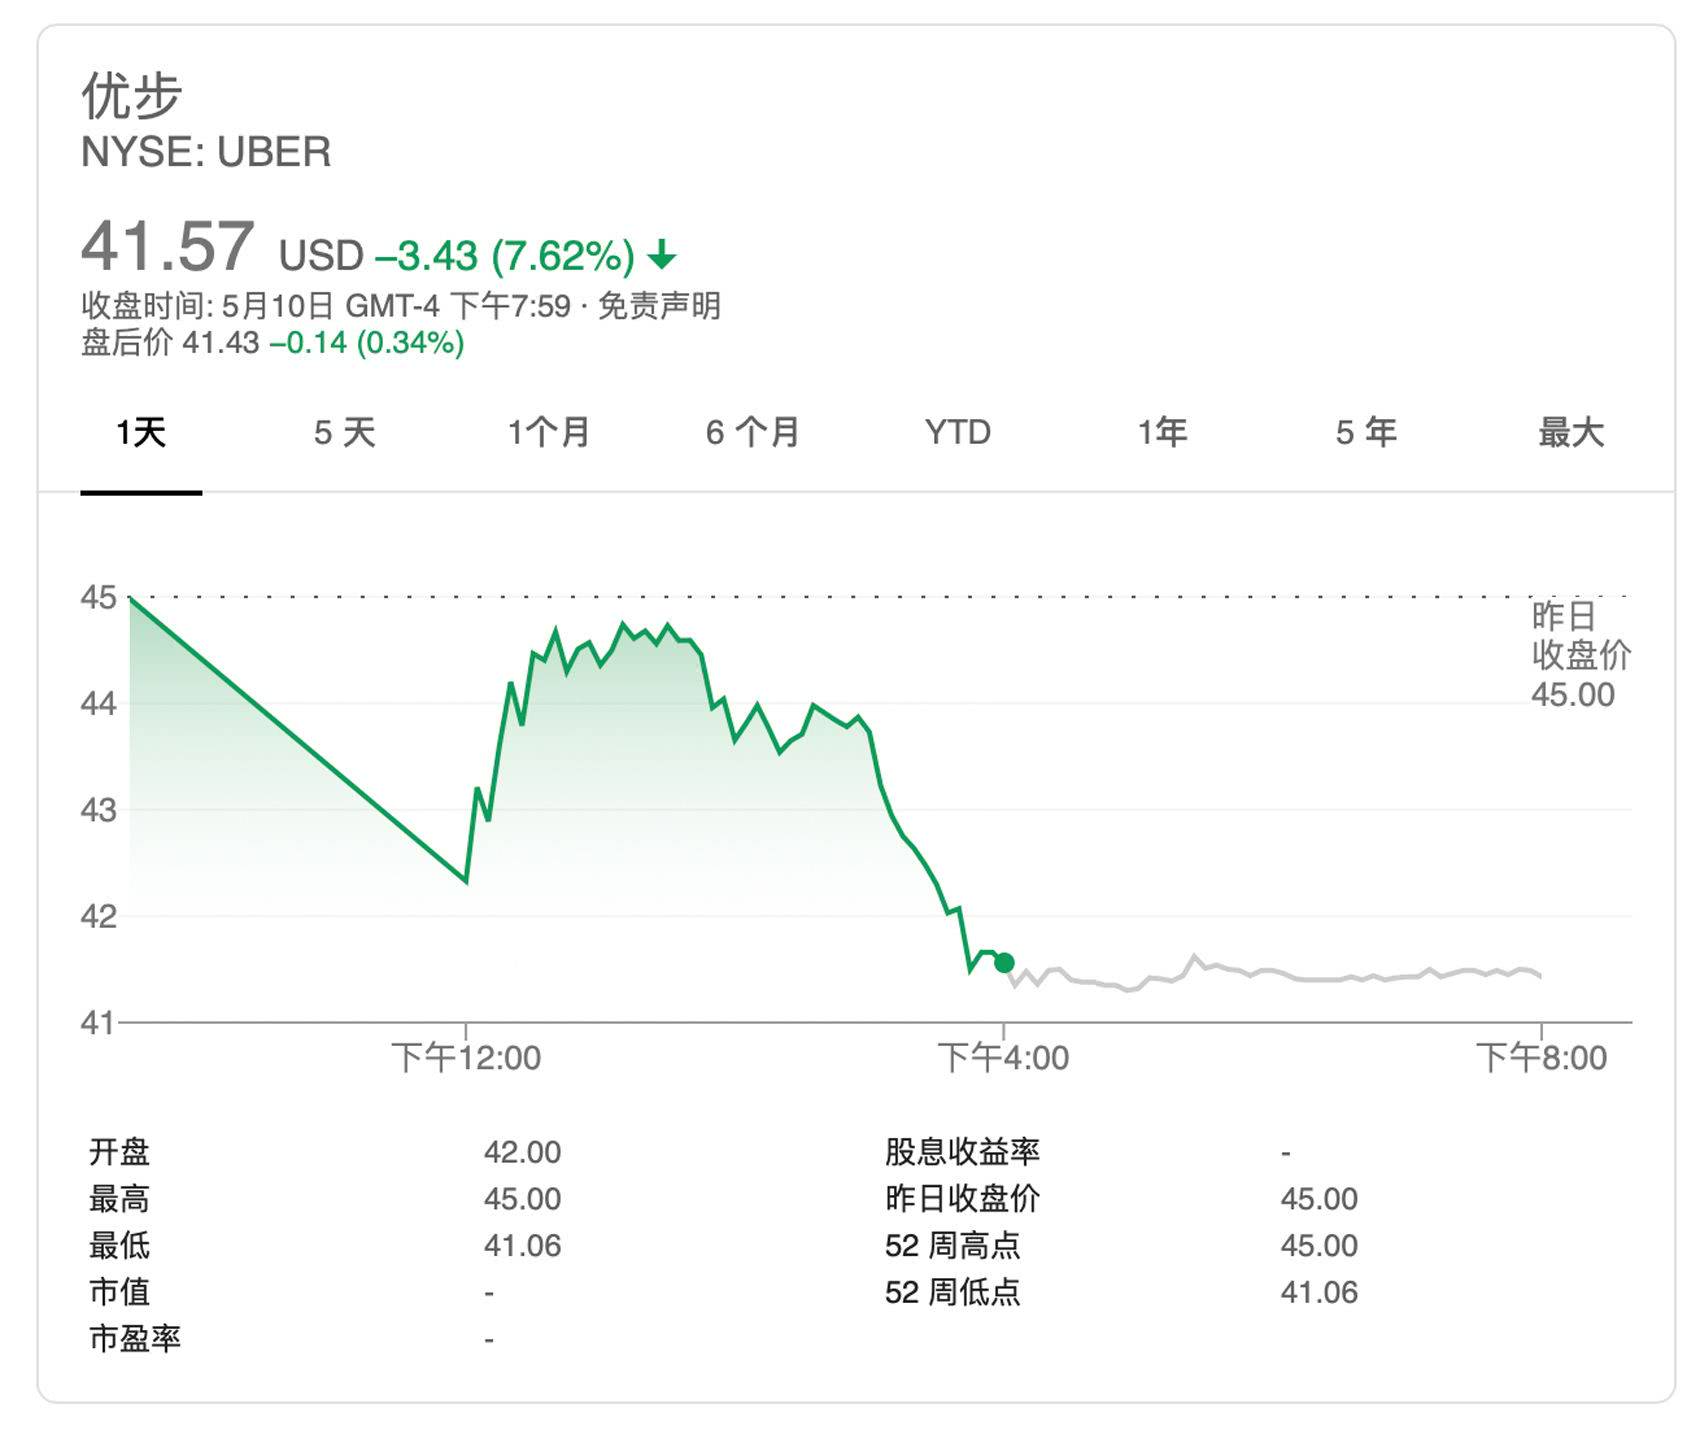 上市当日的 Uber 股价表现 | Google News